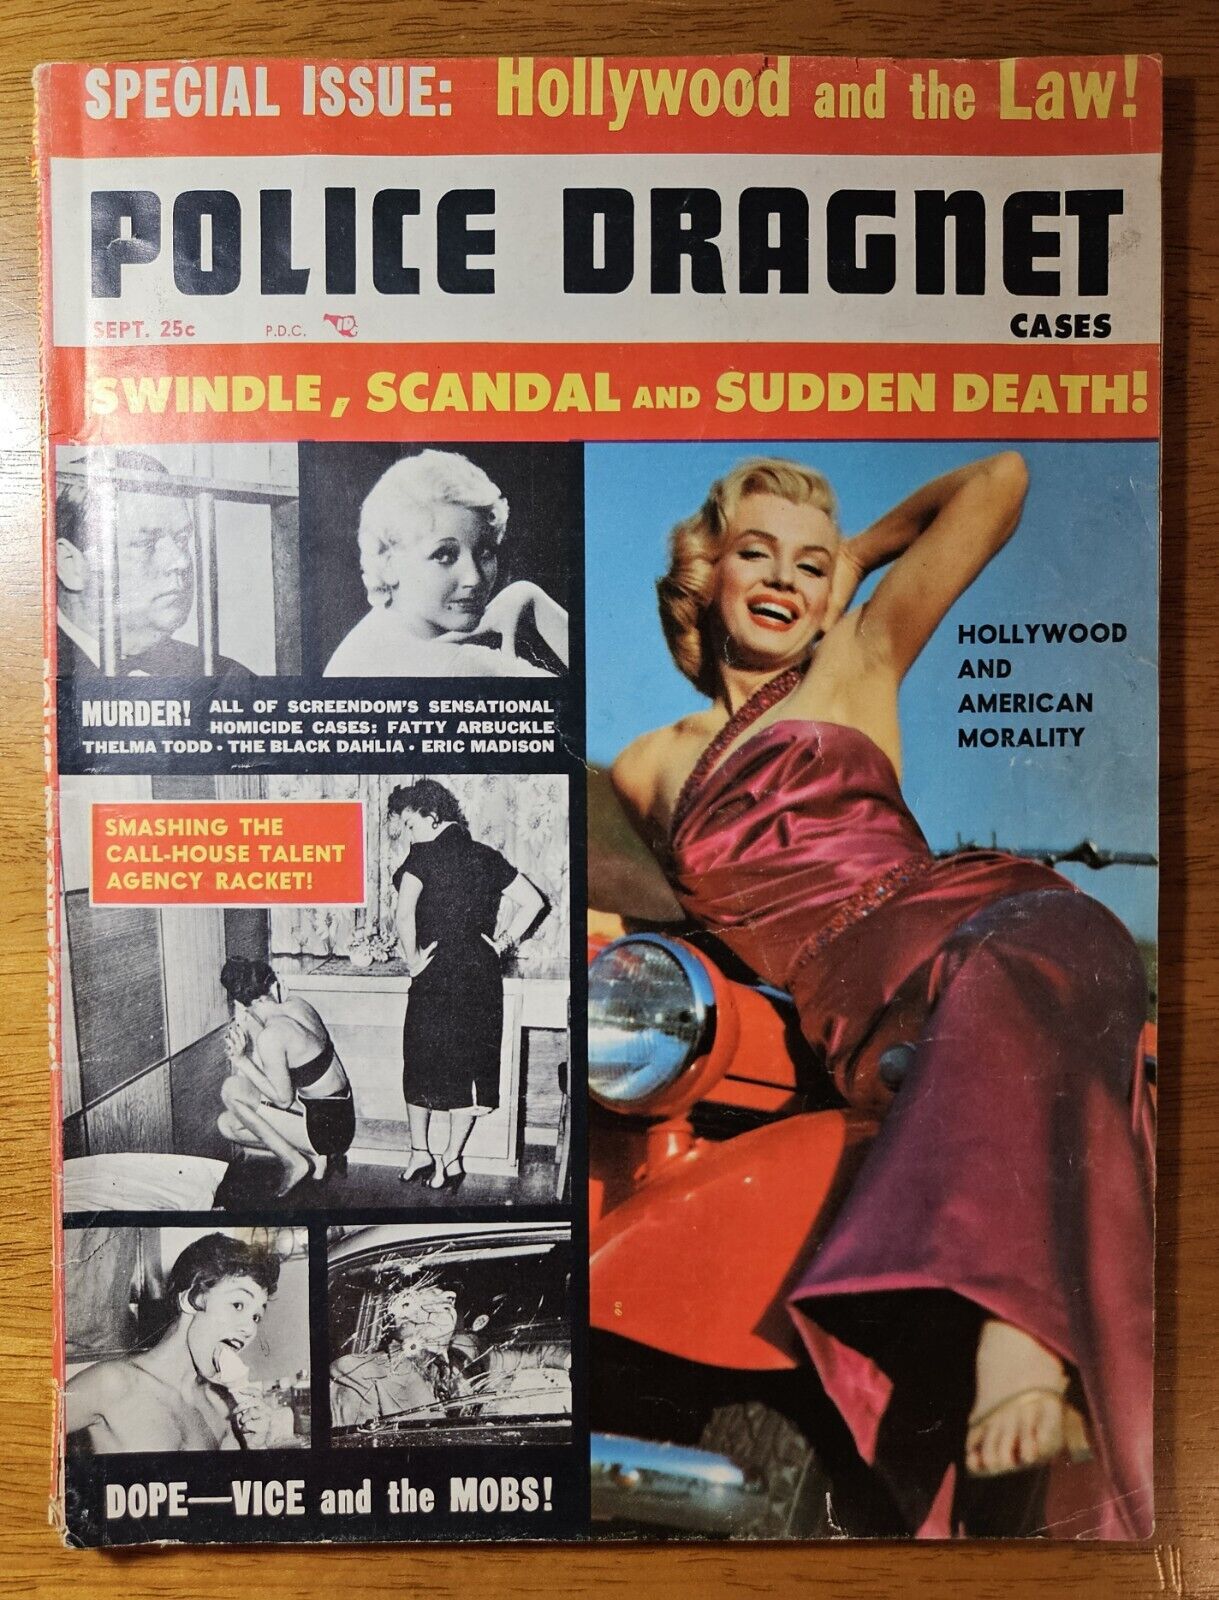 Police Dragnet Cases Magazine September 1955 Vol. 1 No. 5 Marilyn Monroe Cover